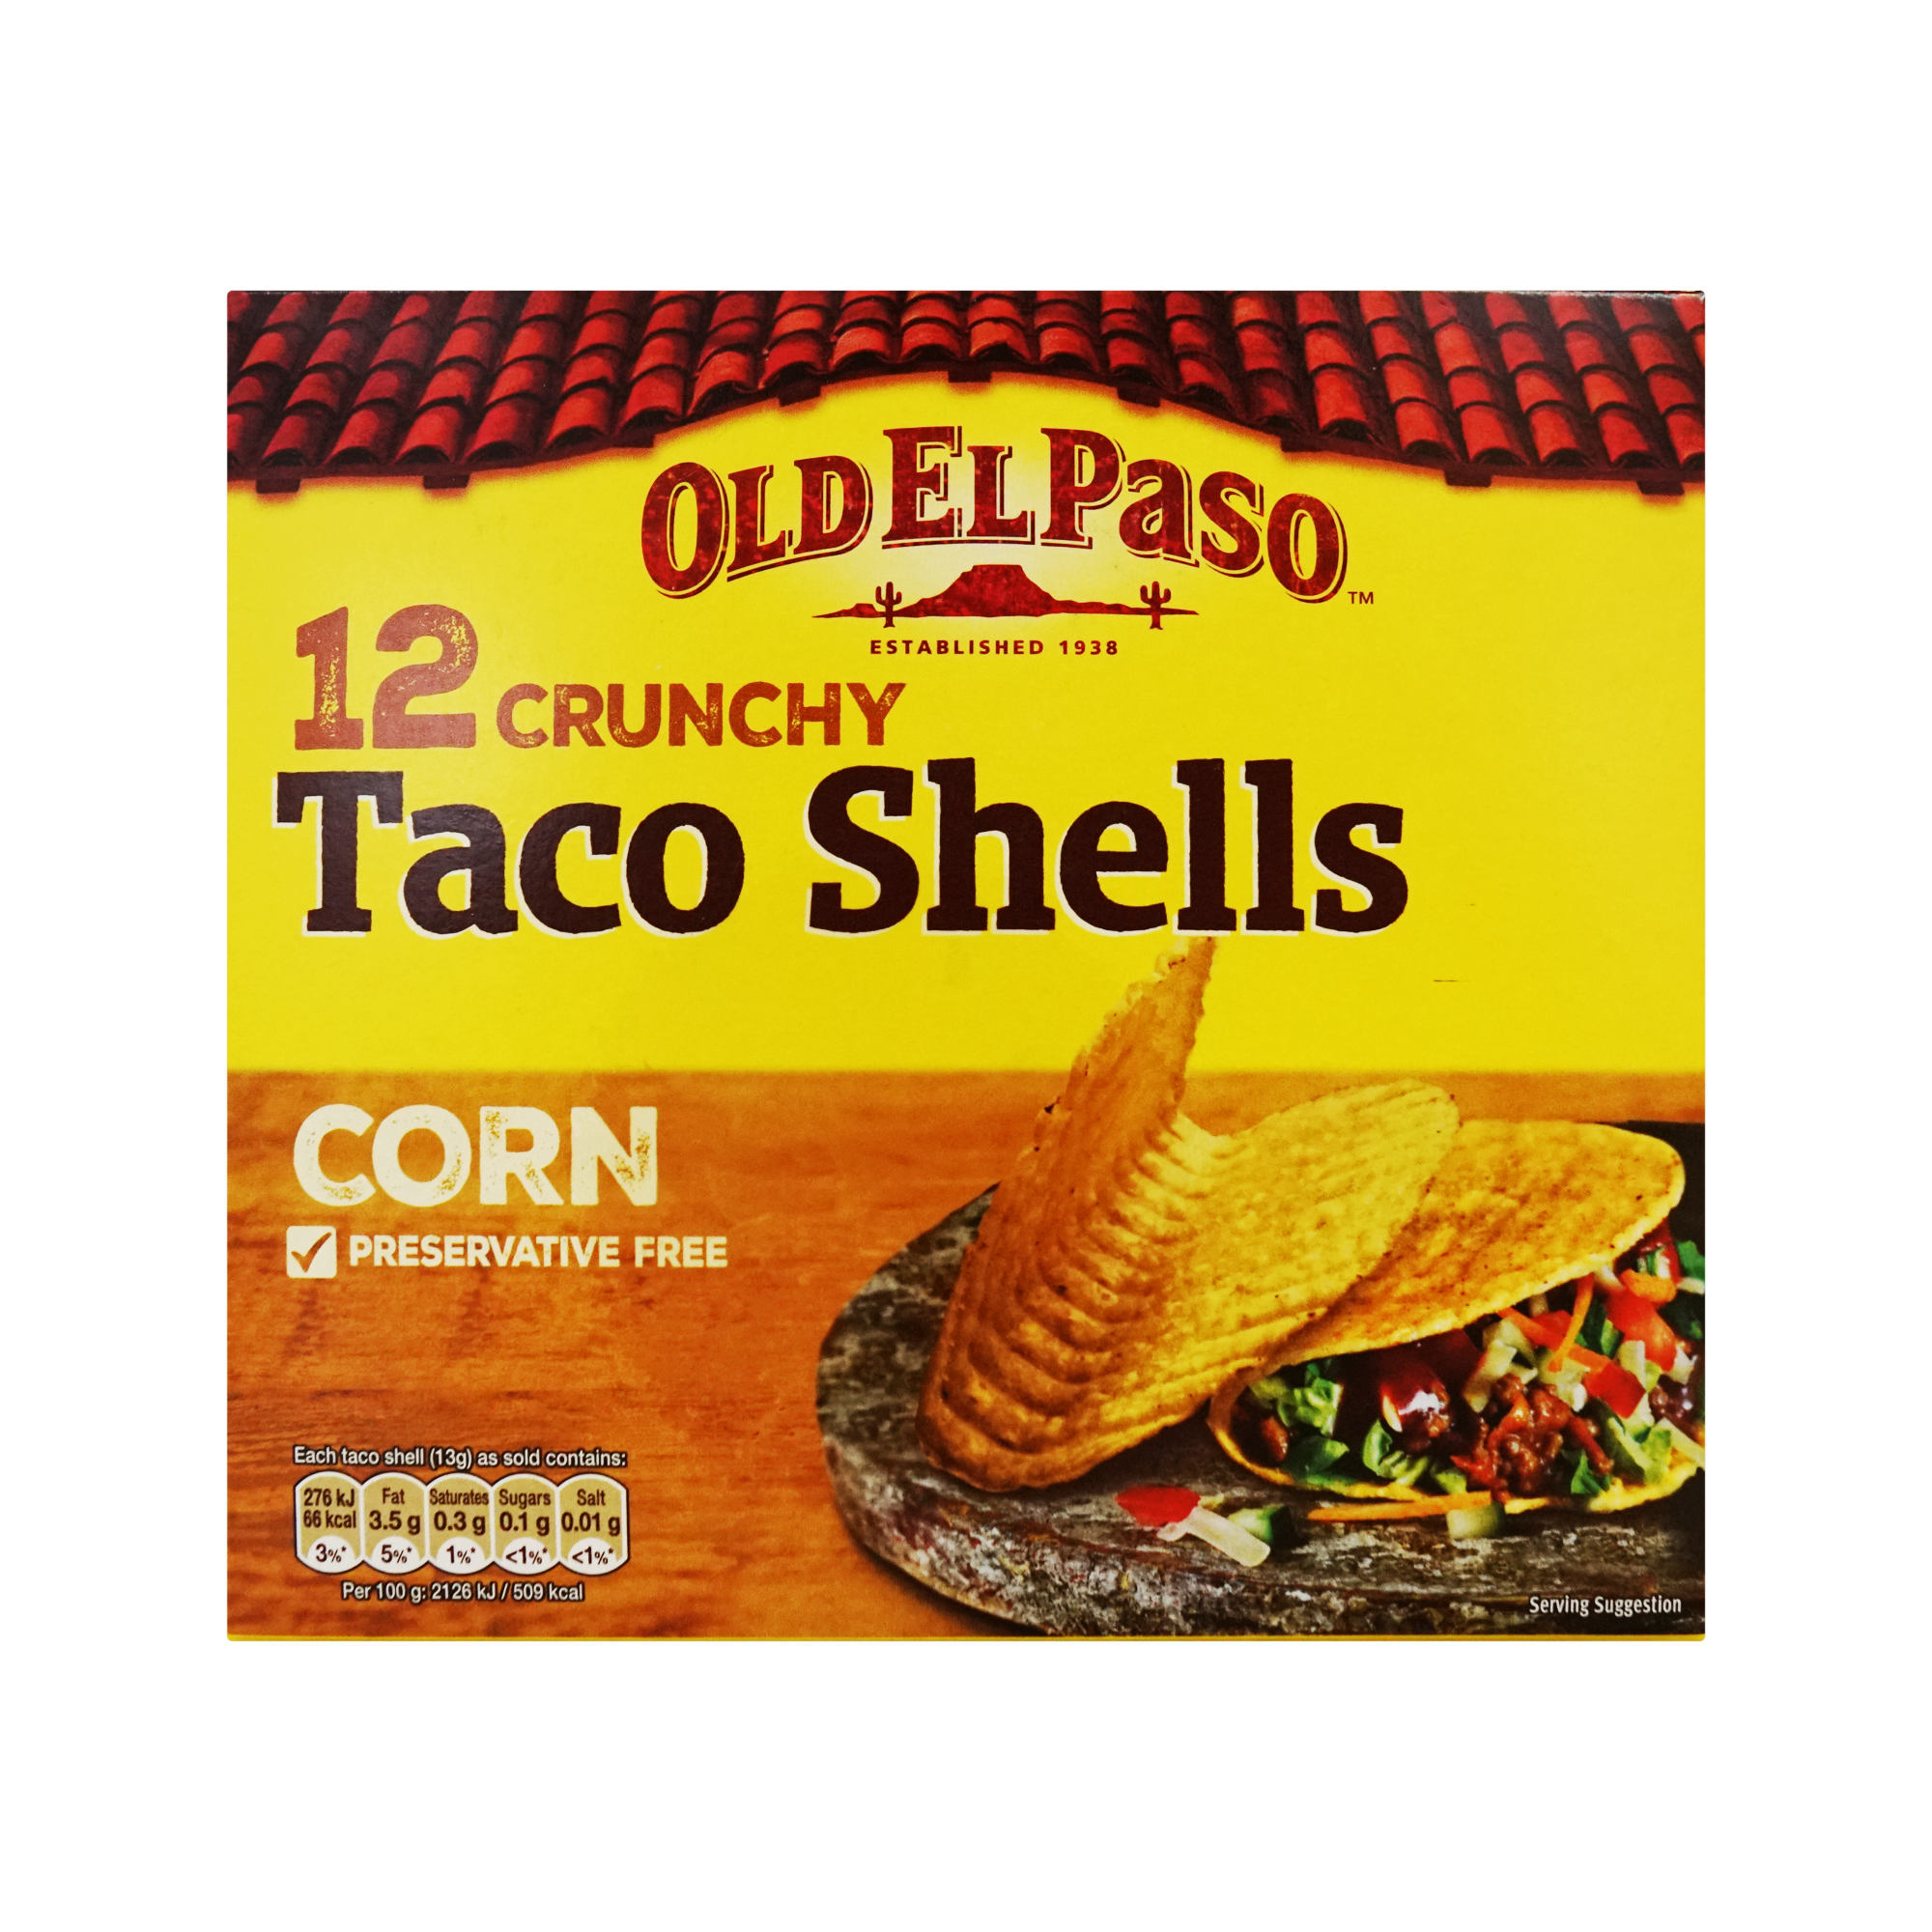 Old El Paso Taco Shells (156g)